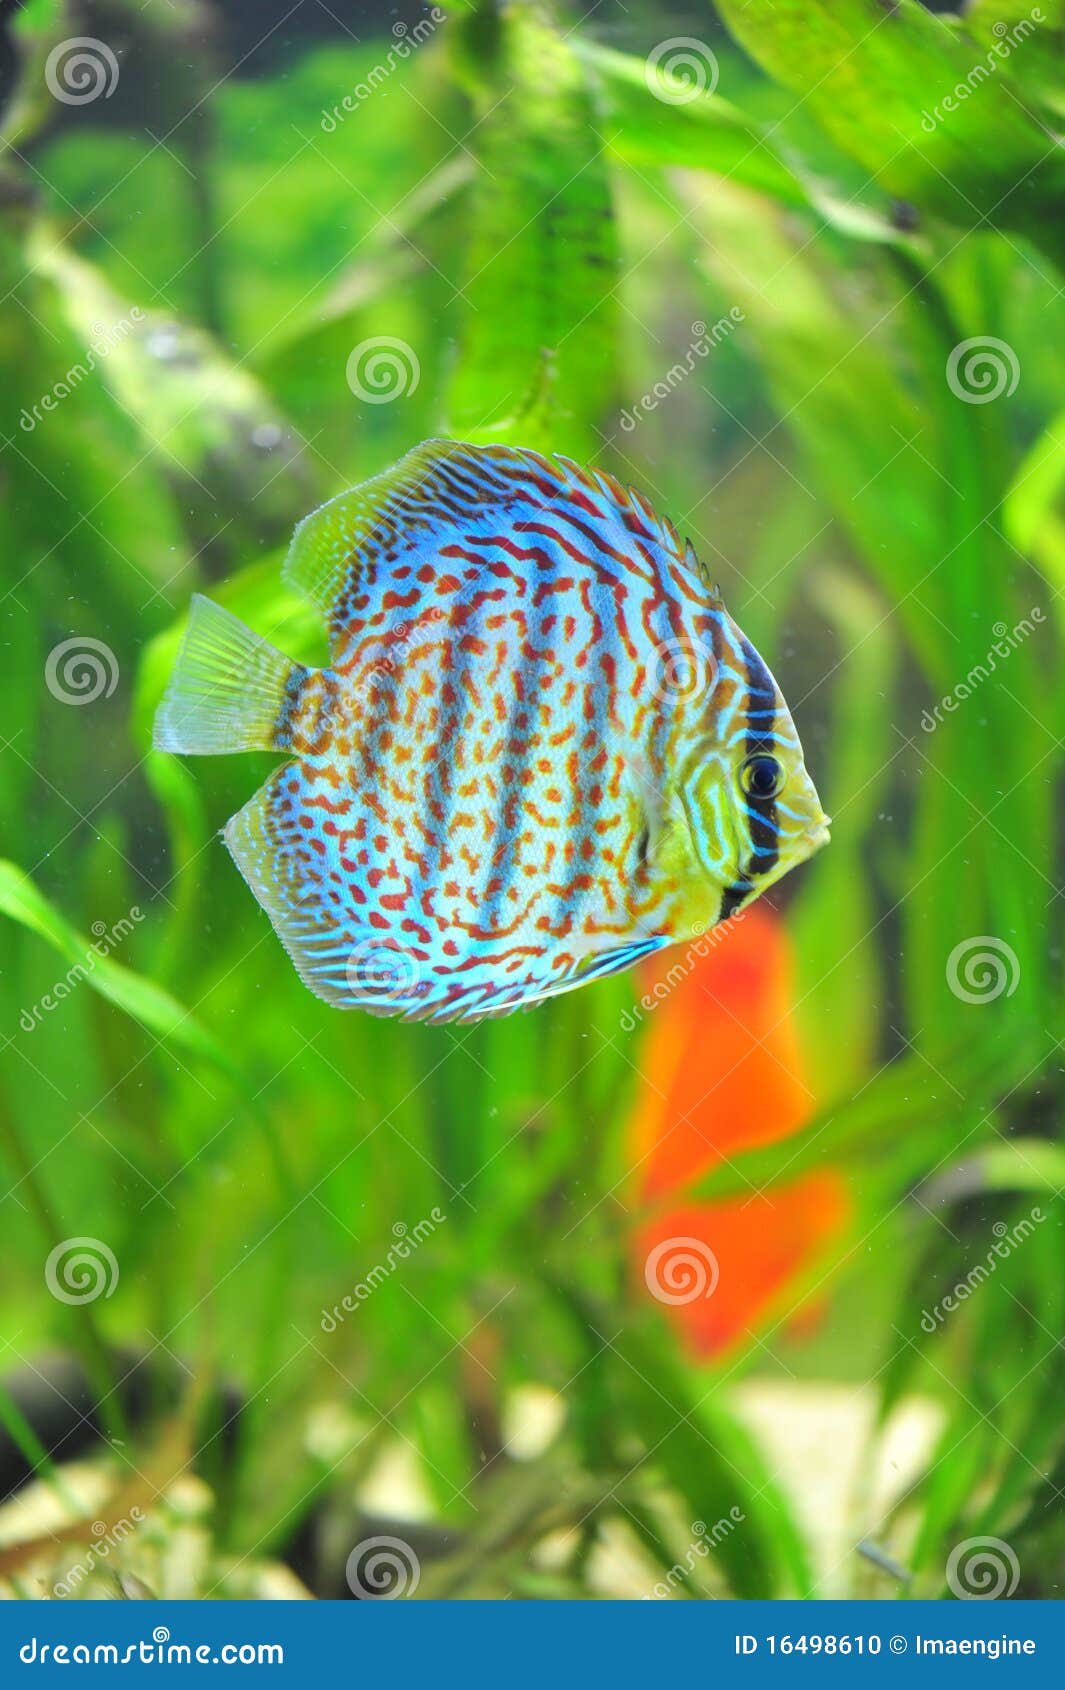 exotic discus fish